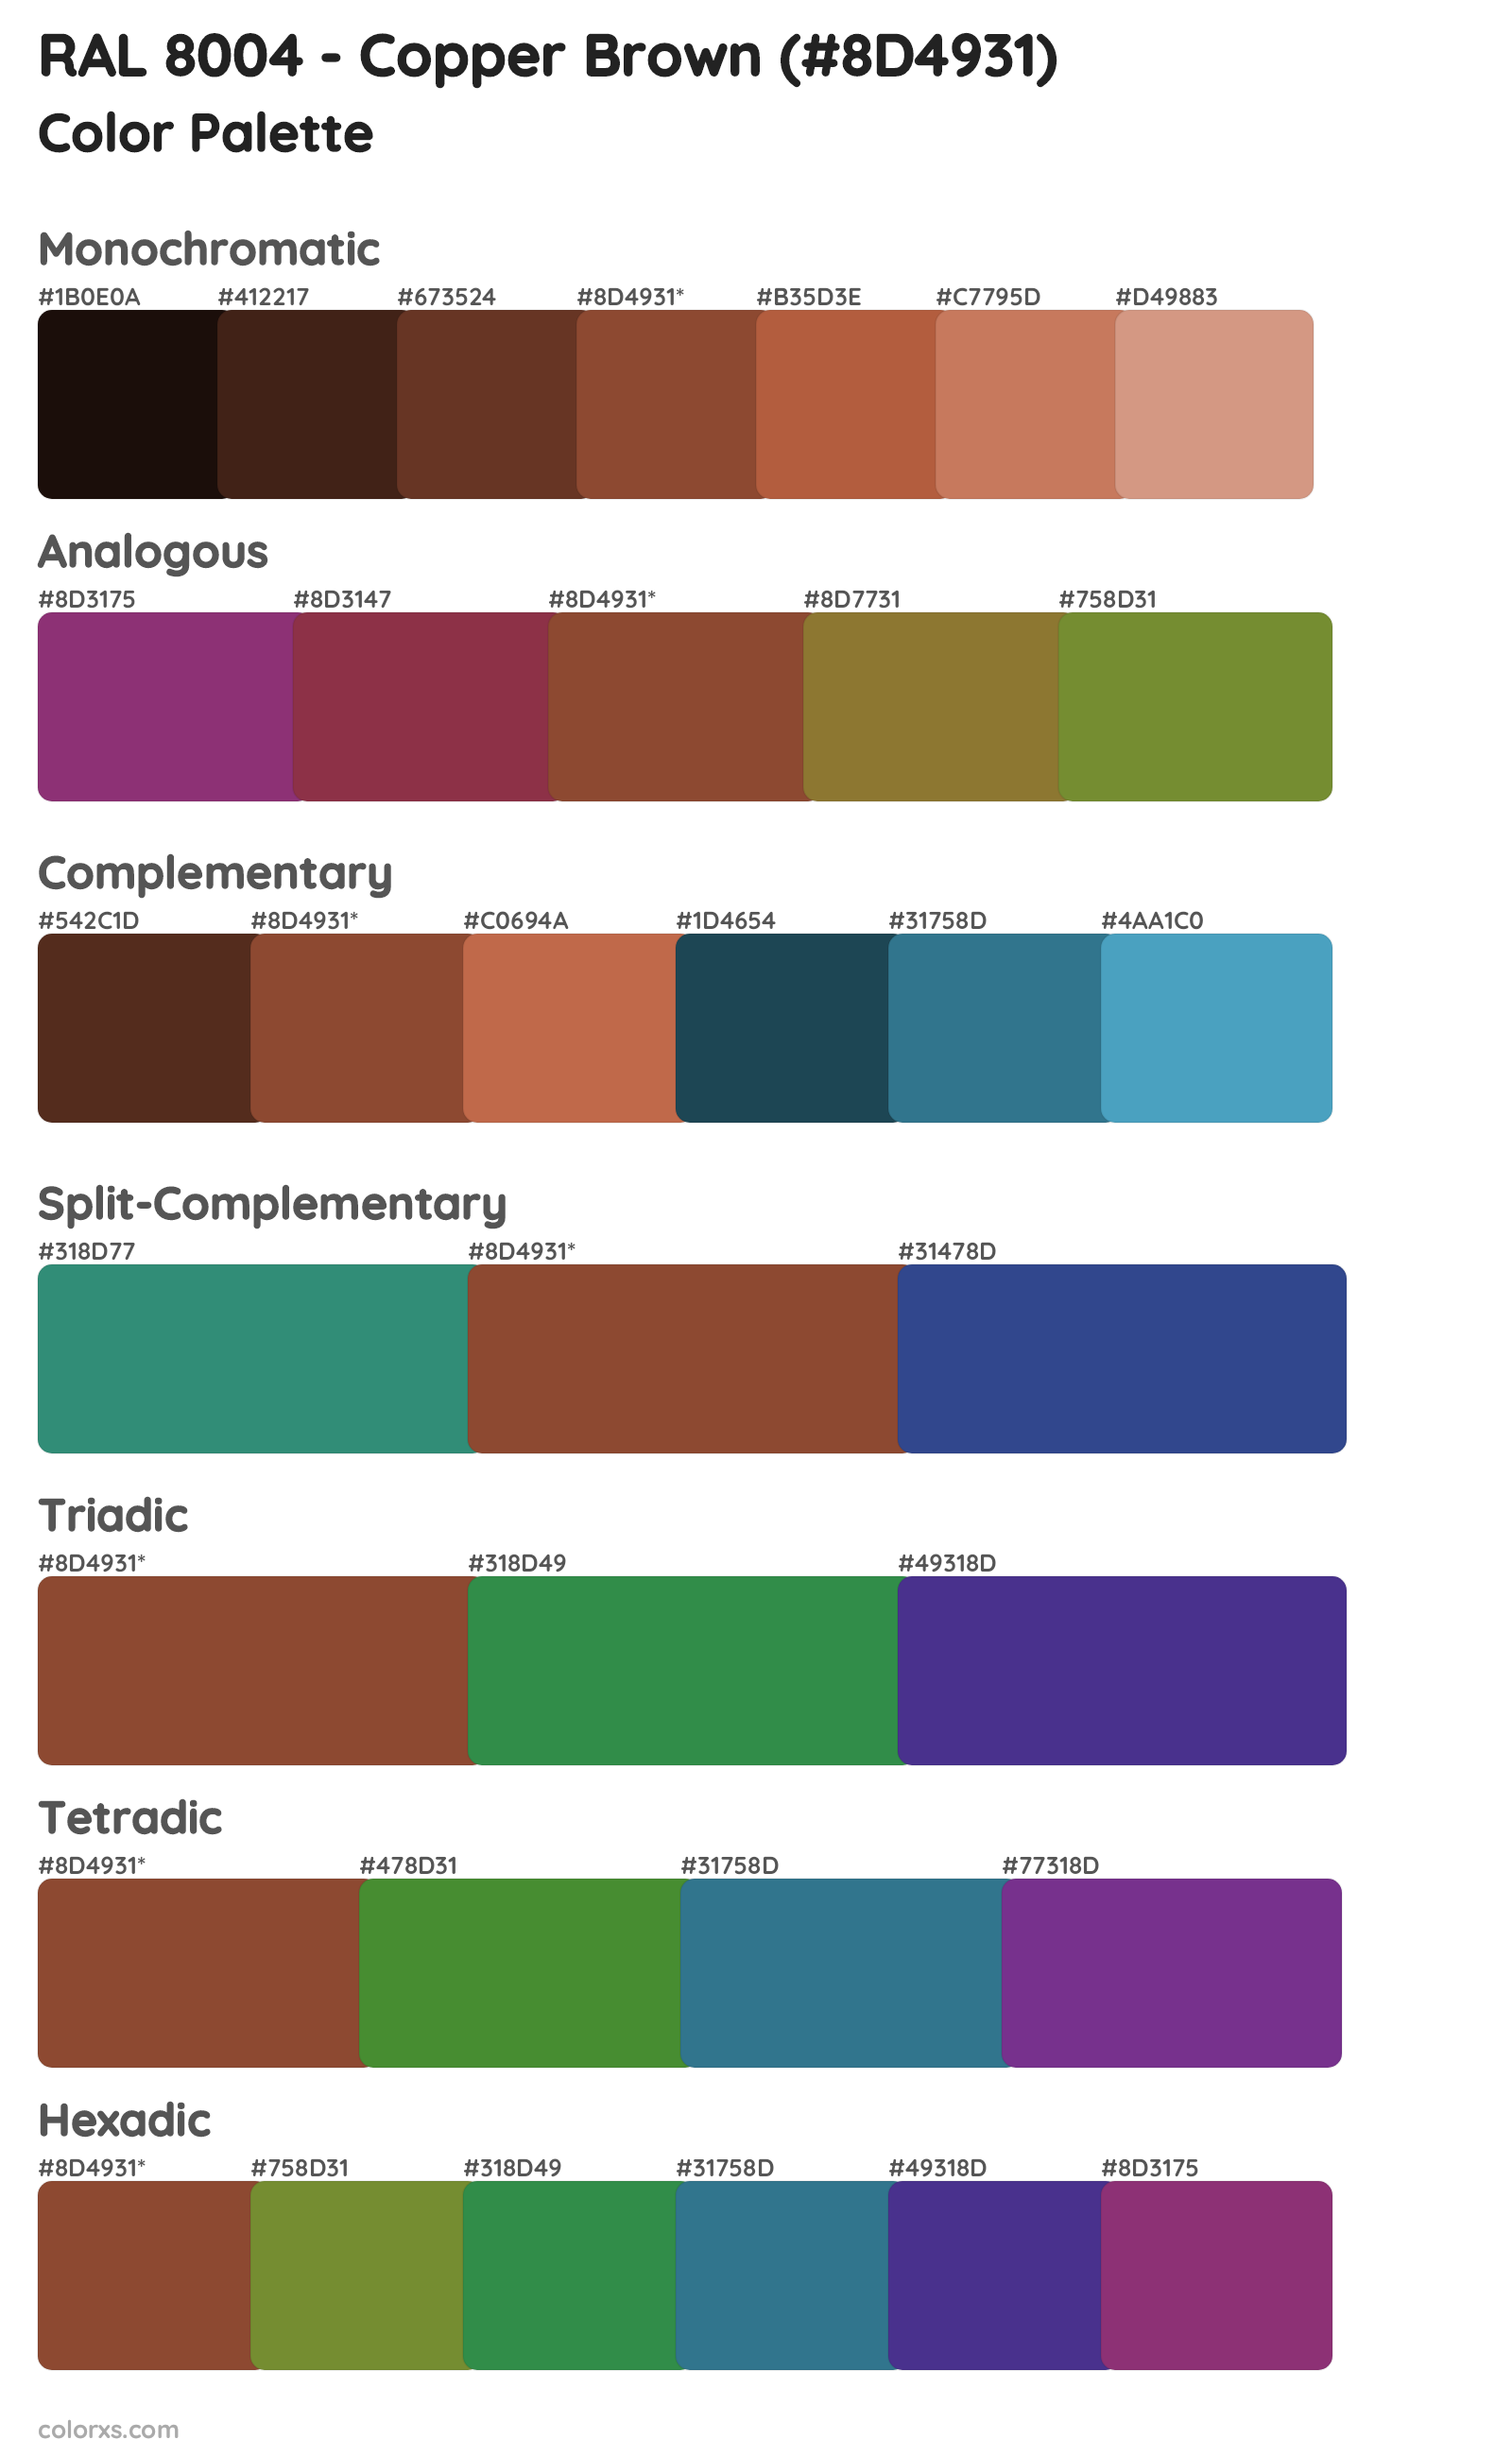 RAL 8004 - Copper Brown Color Scheme Palettes